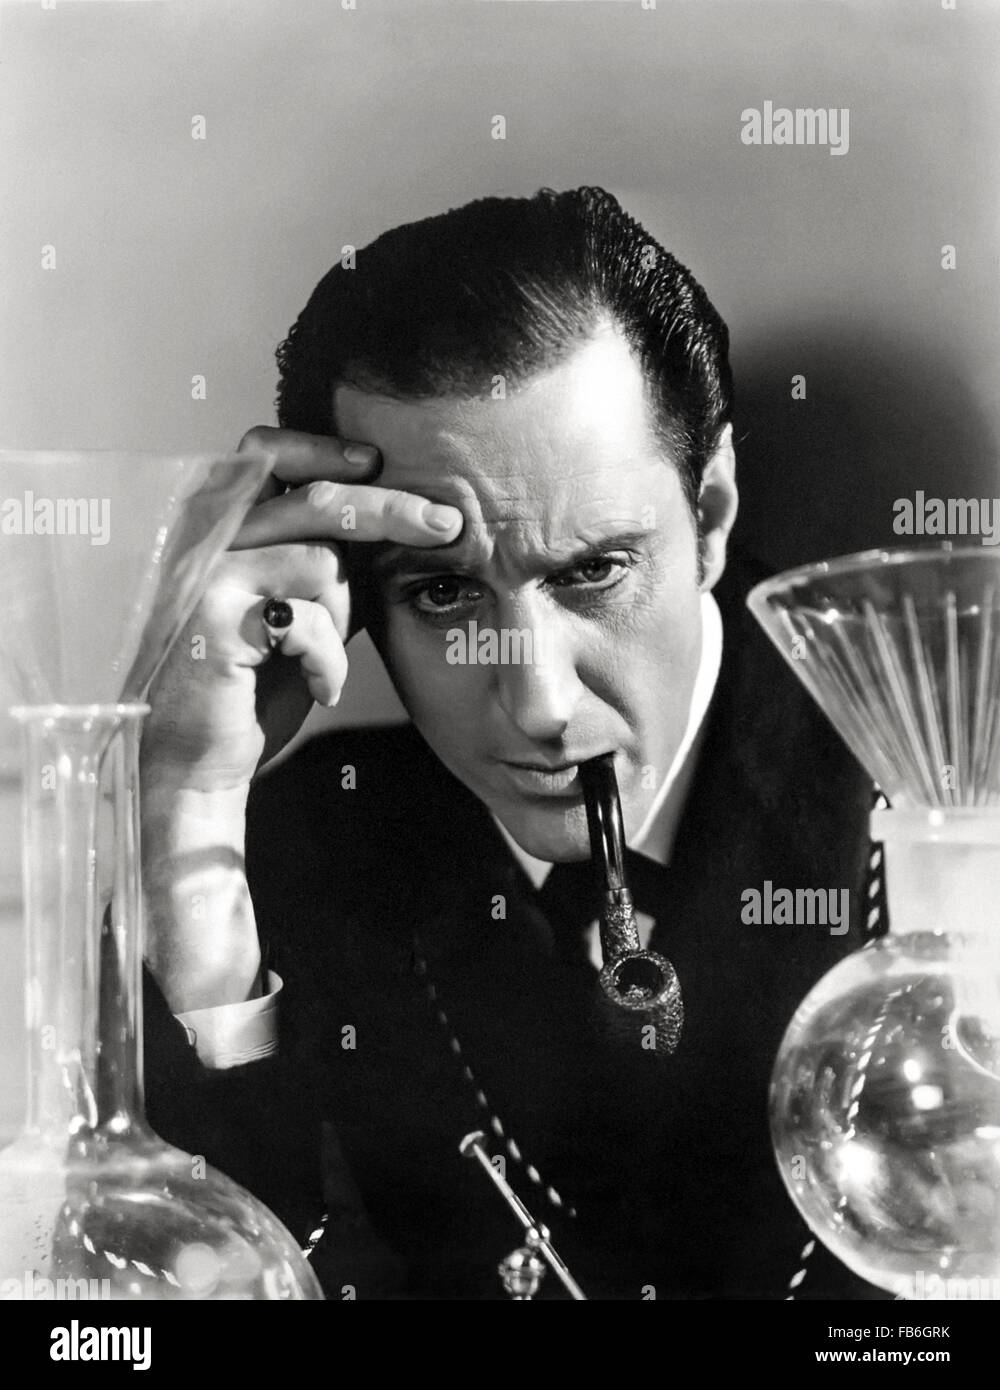 Pubblicità fotografia mostrante Sherlock Holmes ha giocato da Basil Rathbone conducendo un esperimento scientifico, rilasciato per promuovere l"Sherlock Holmes e la voce del terrore" pubblicato nel 1942. Foto Stock